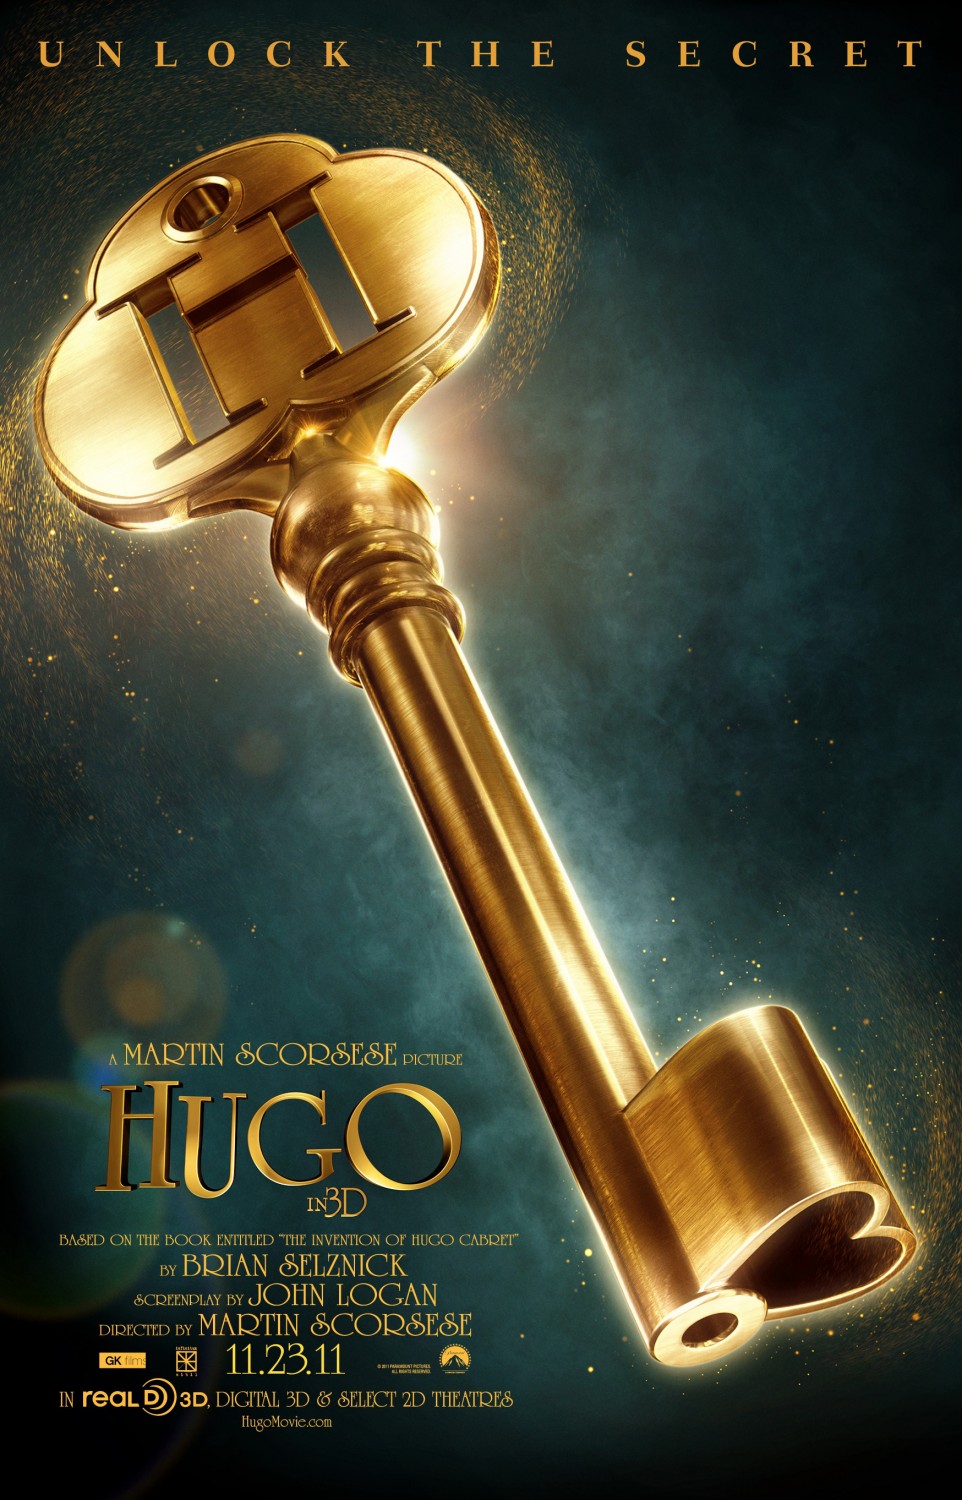 Hugo Cabret Movie Soundtrack Download free online